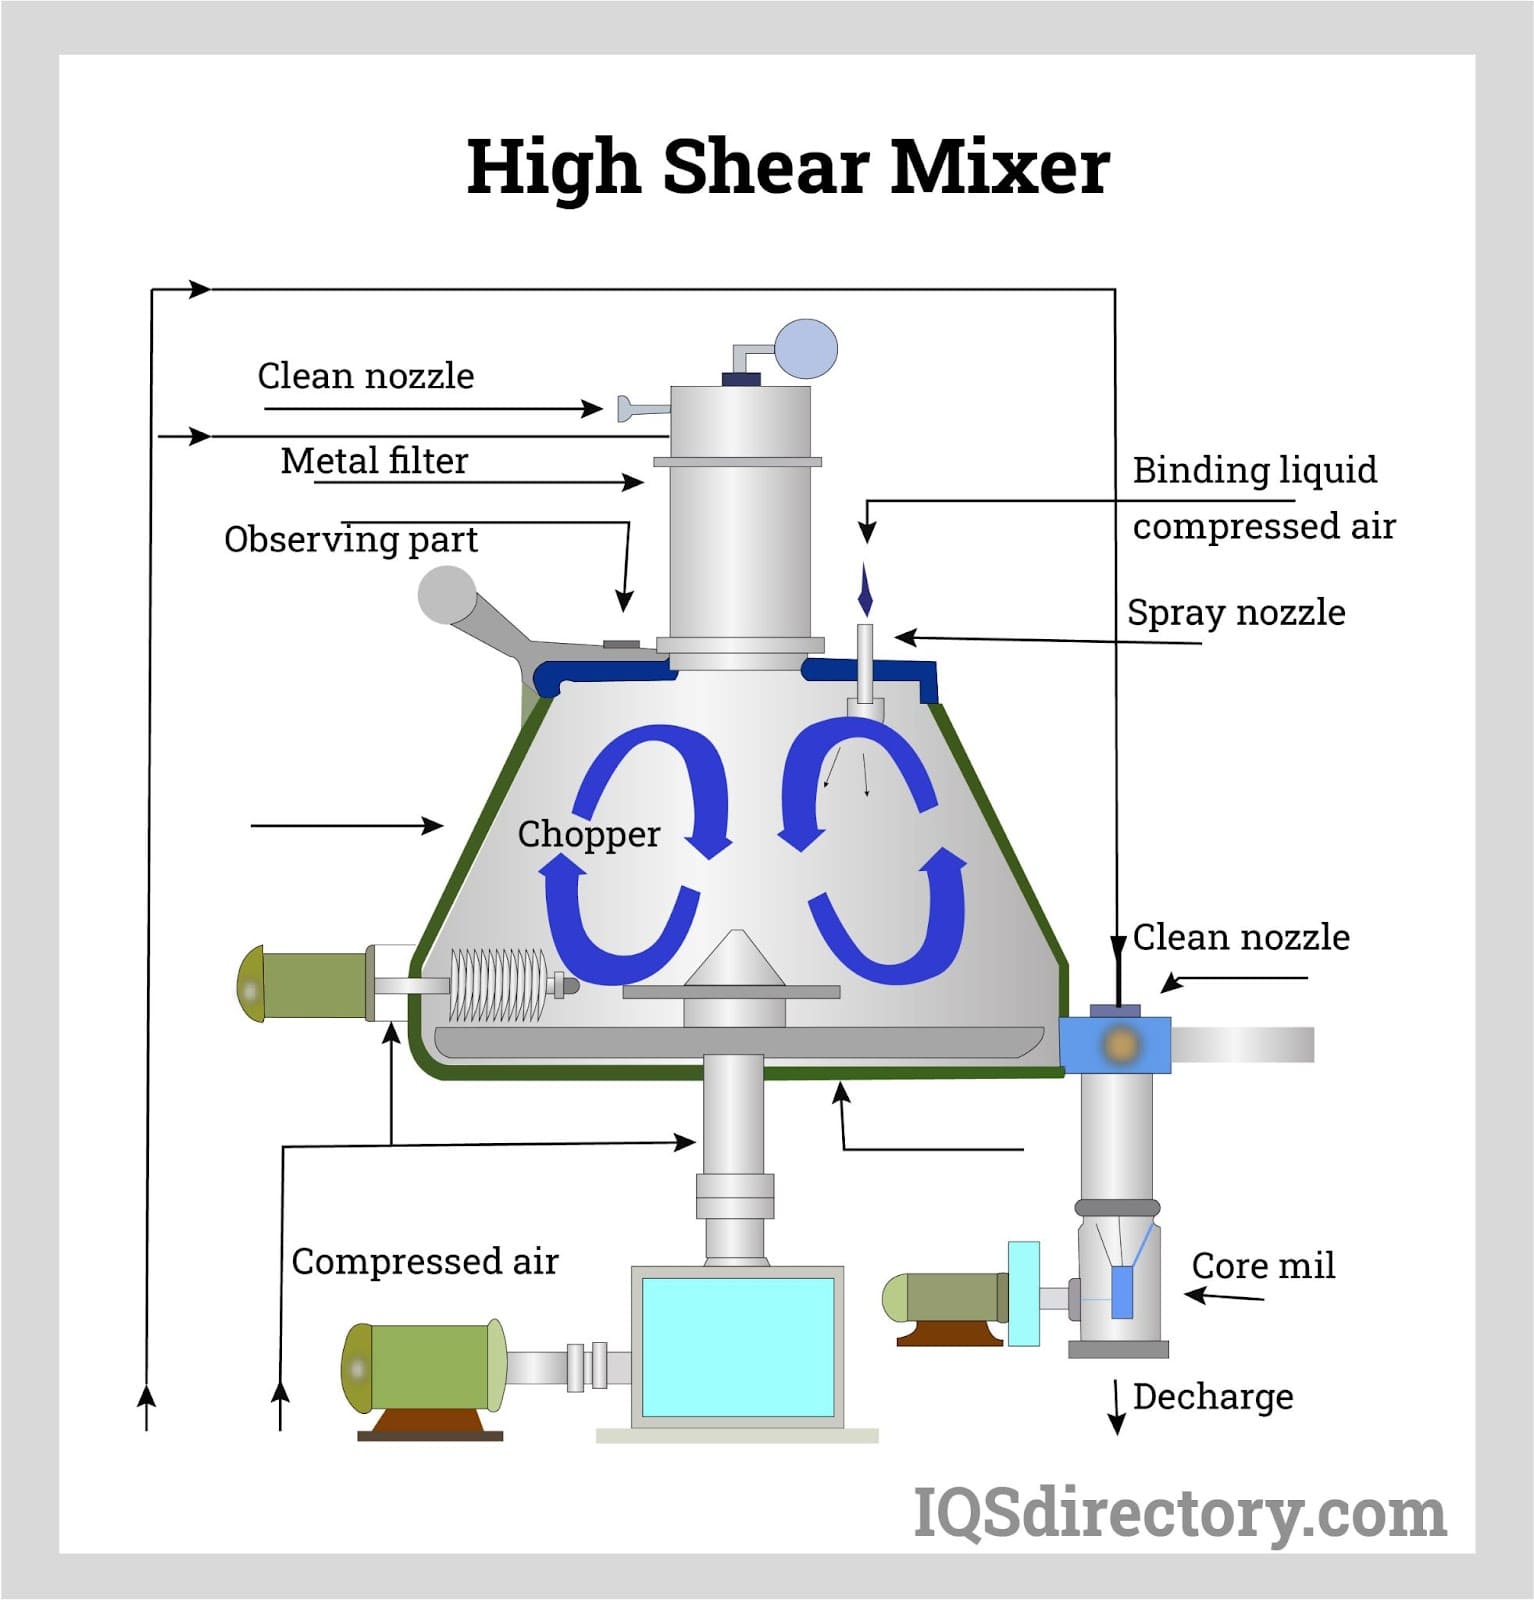 https://www.industrialmixers.com/wp-content/uploads/2022/11/high-shear-mixer.jpg